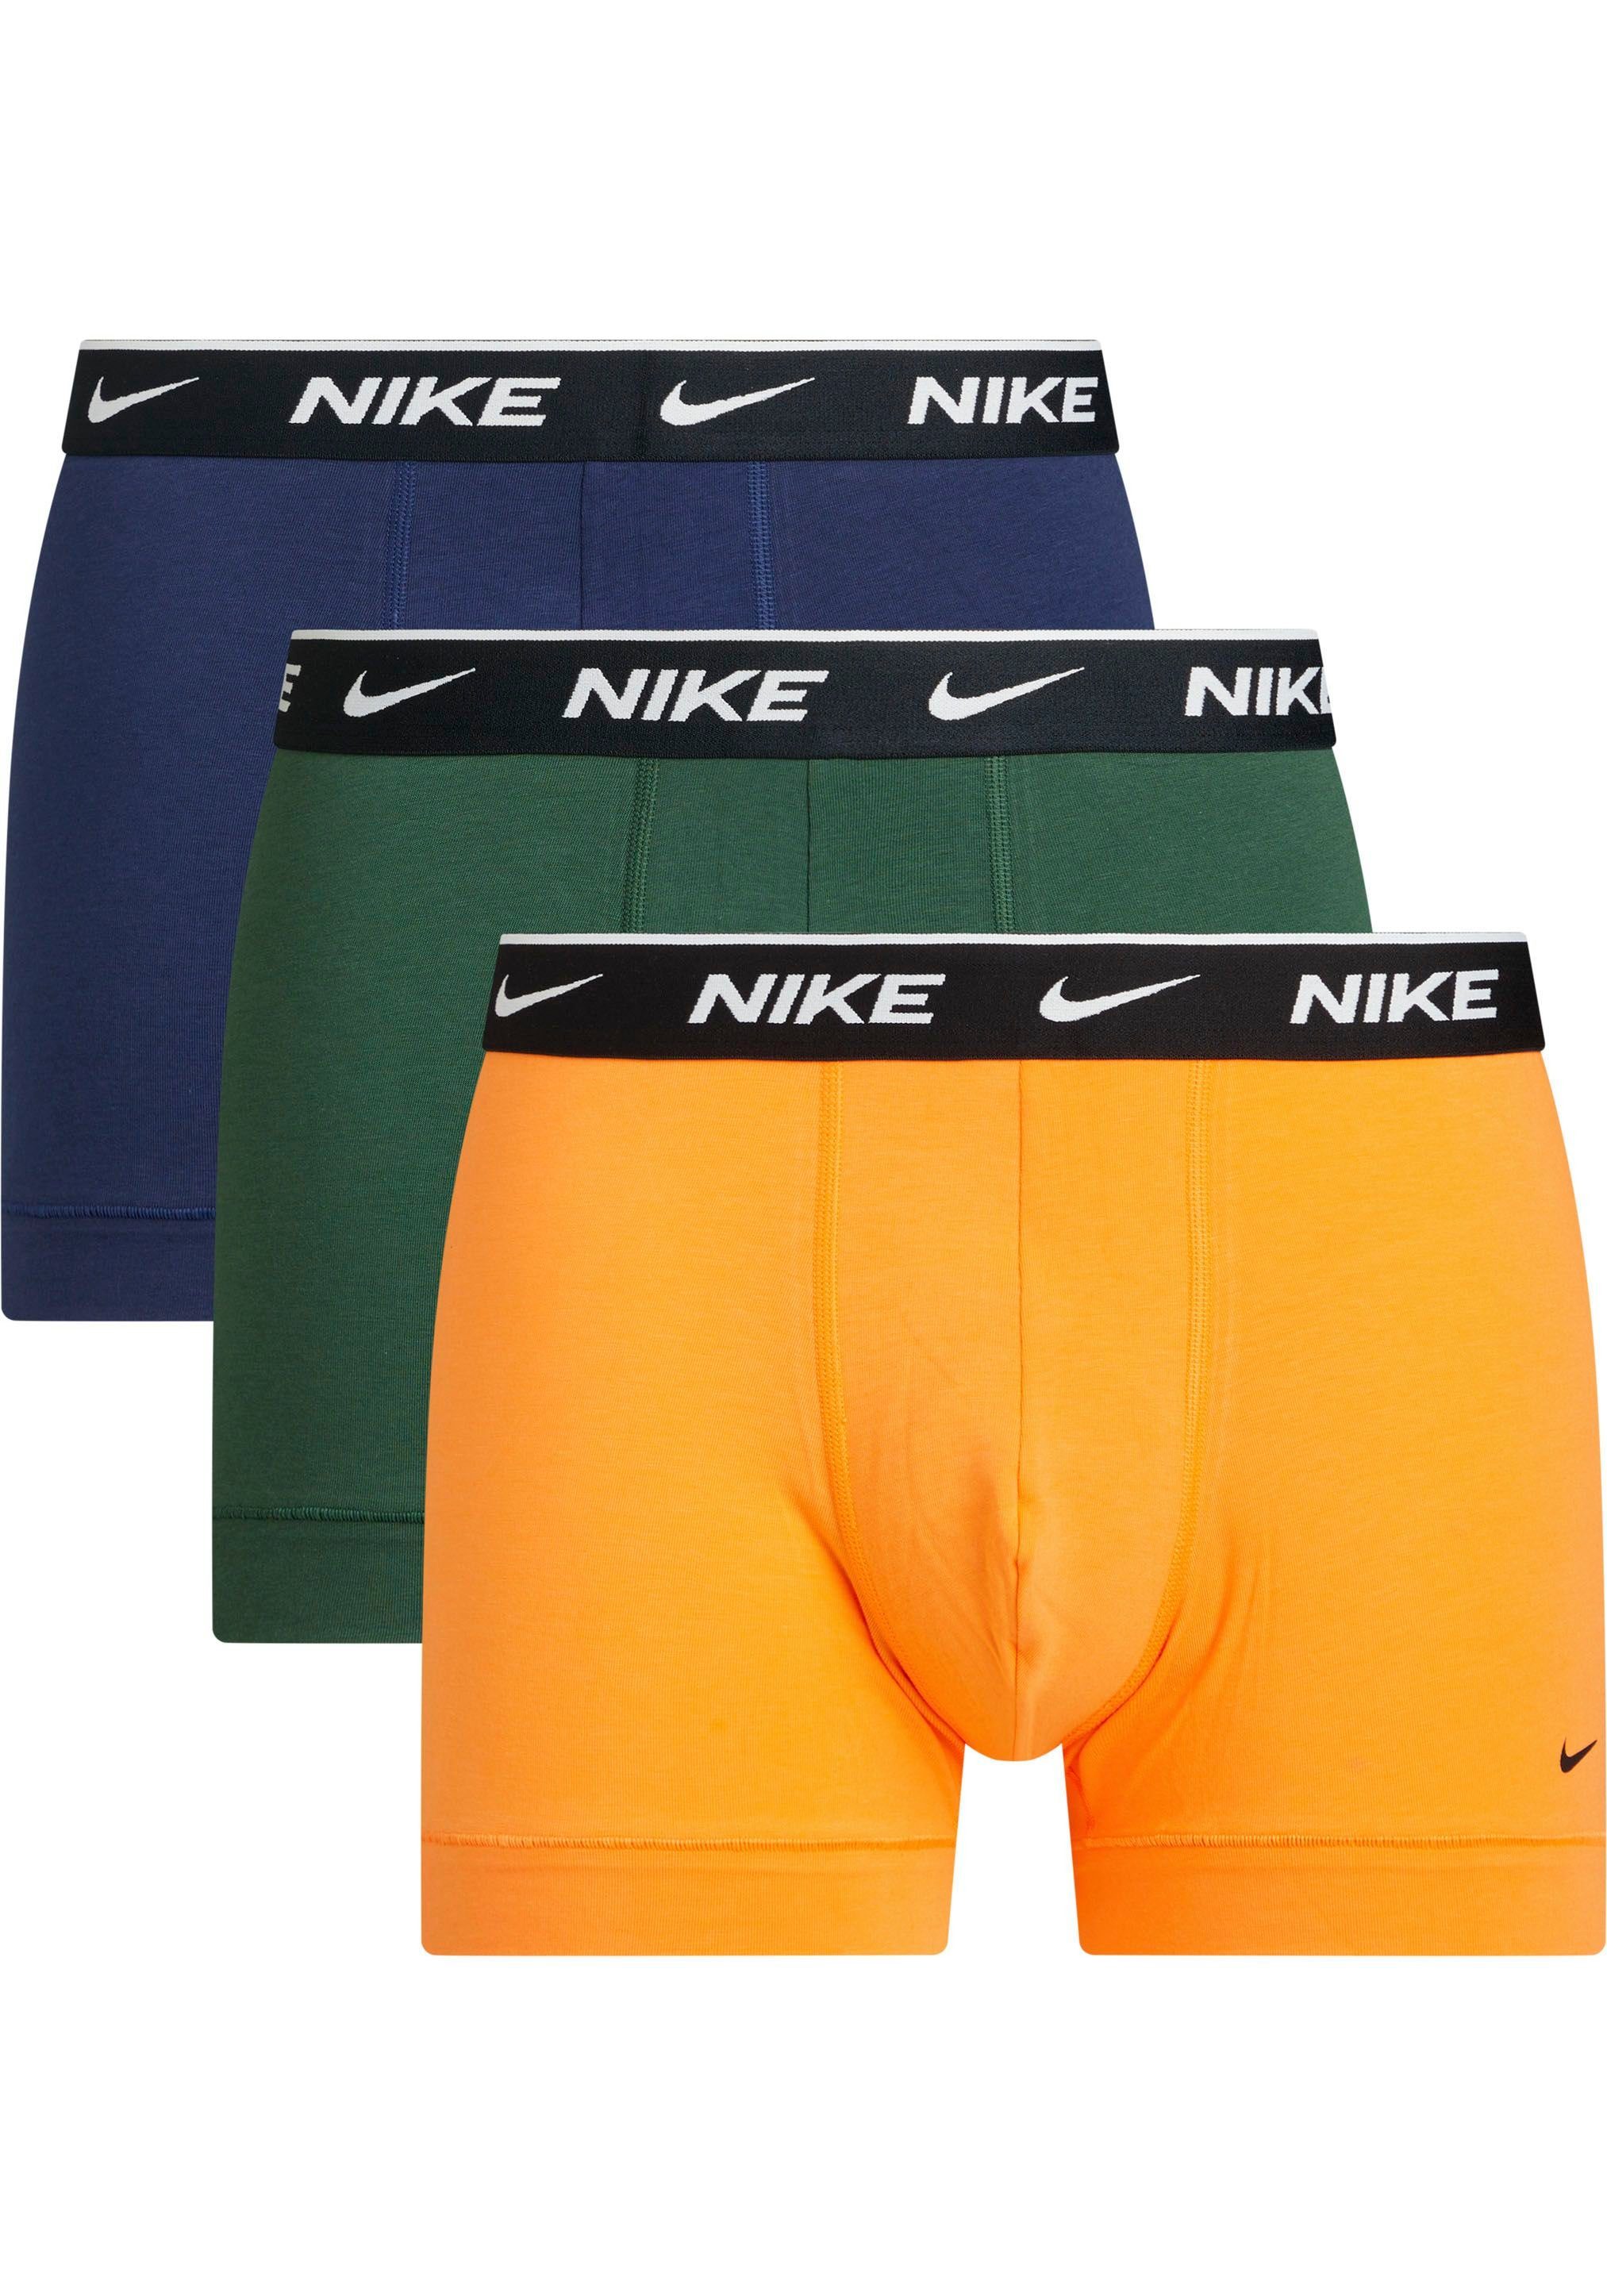 Nike Boxershort met labeldetail in een set van 3 stuks